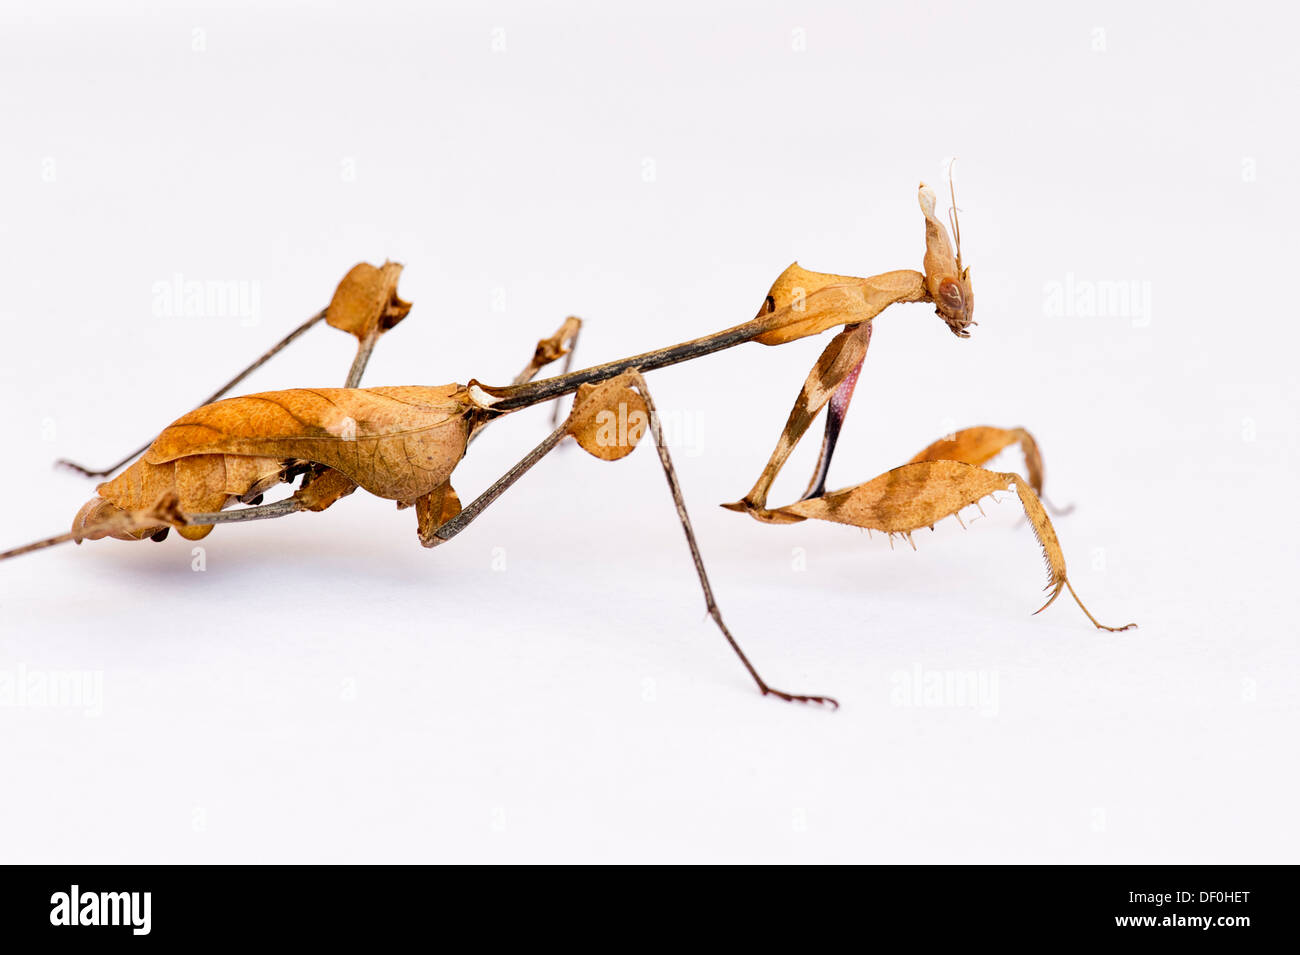 Gongylus gongylodes. Wandering violin mantis. Ornate mantis. Indian rose mantis Stock Photo